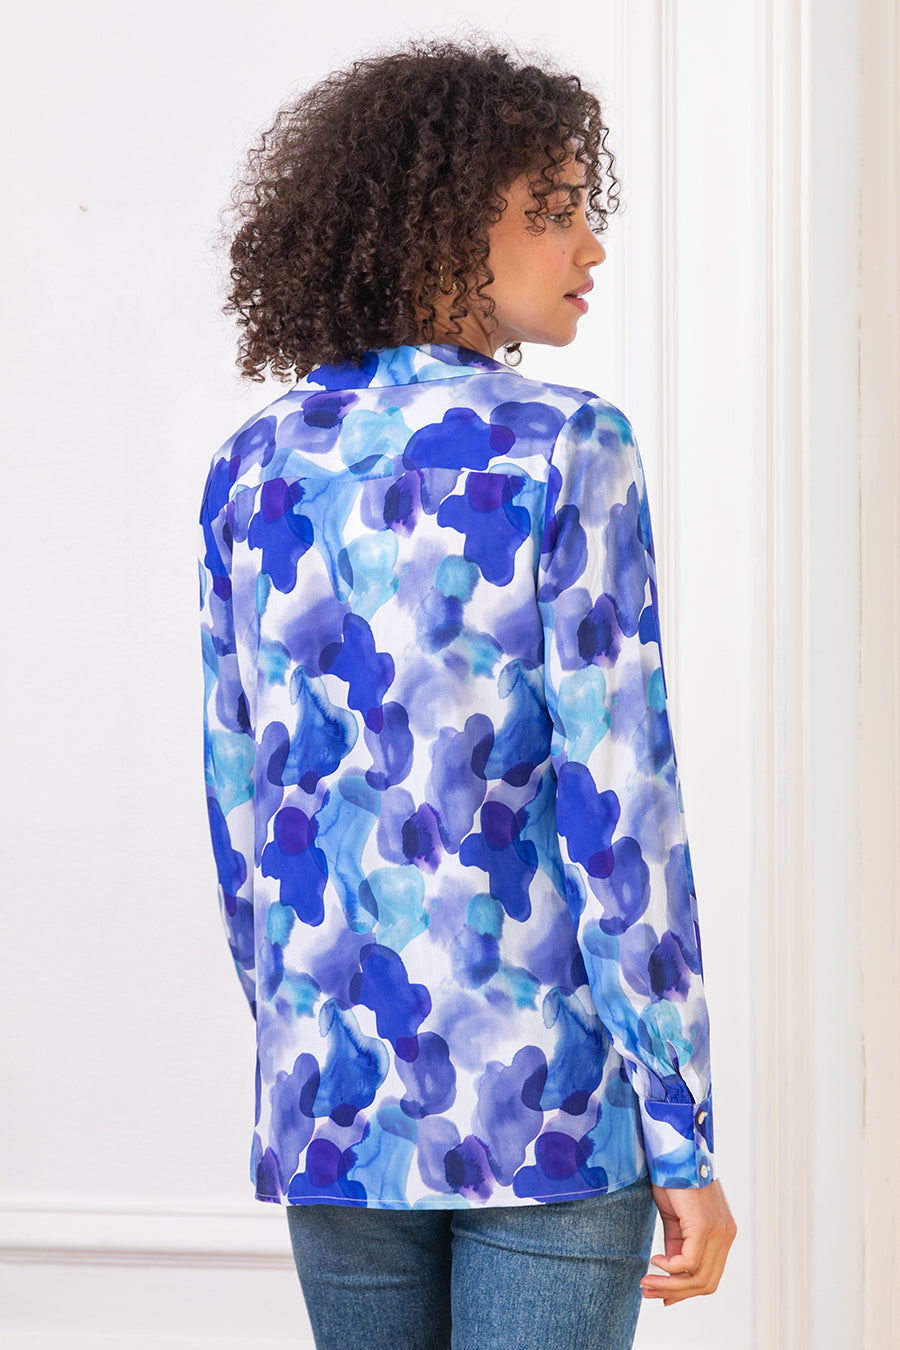 Γυναικείο πουκάμισο Kanoa, Ναυτικό μπλε/Μωβ 4